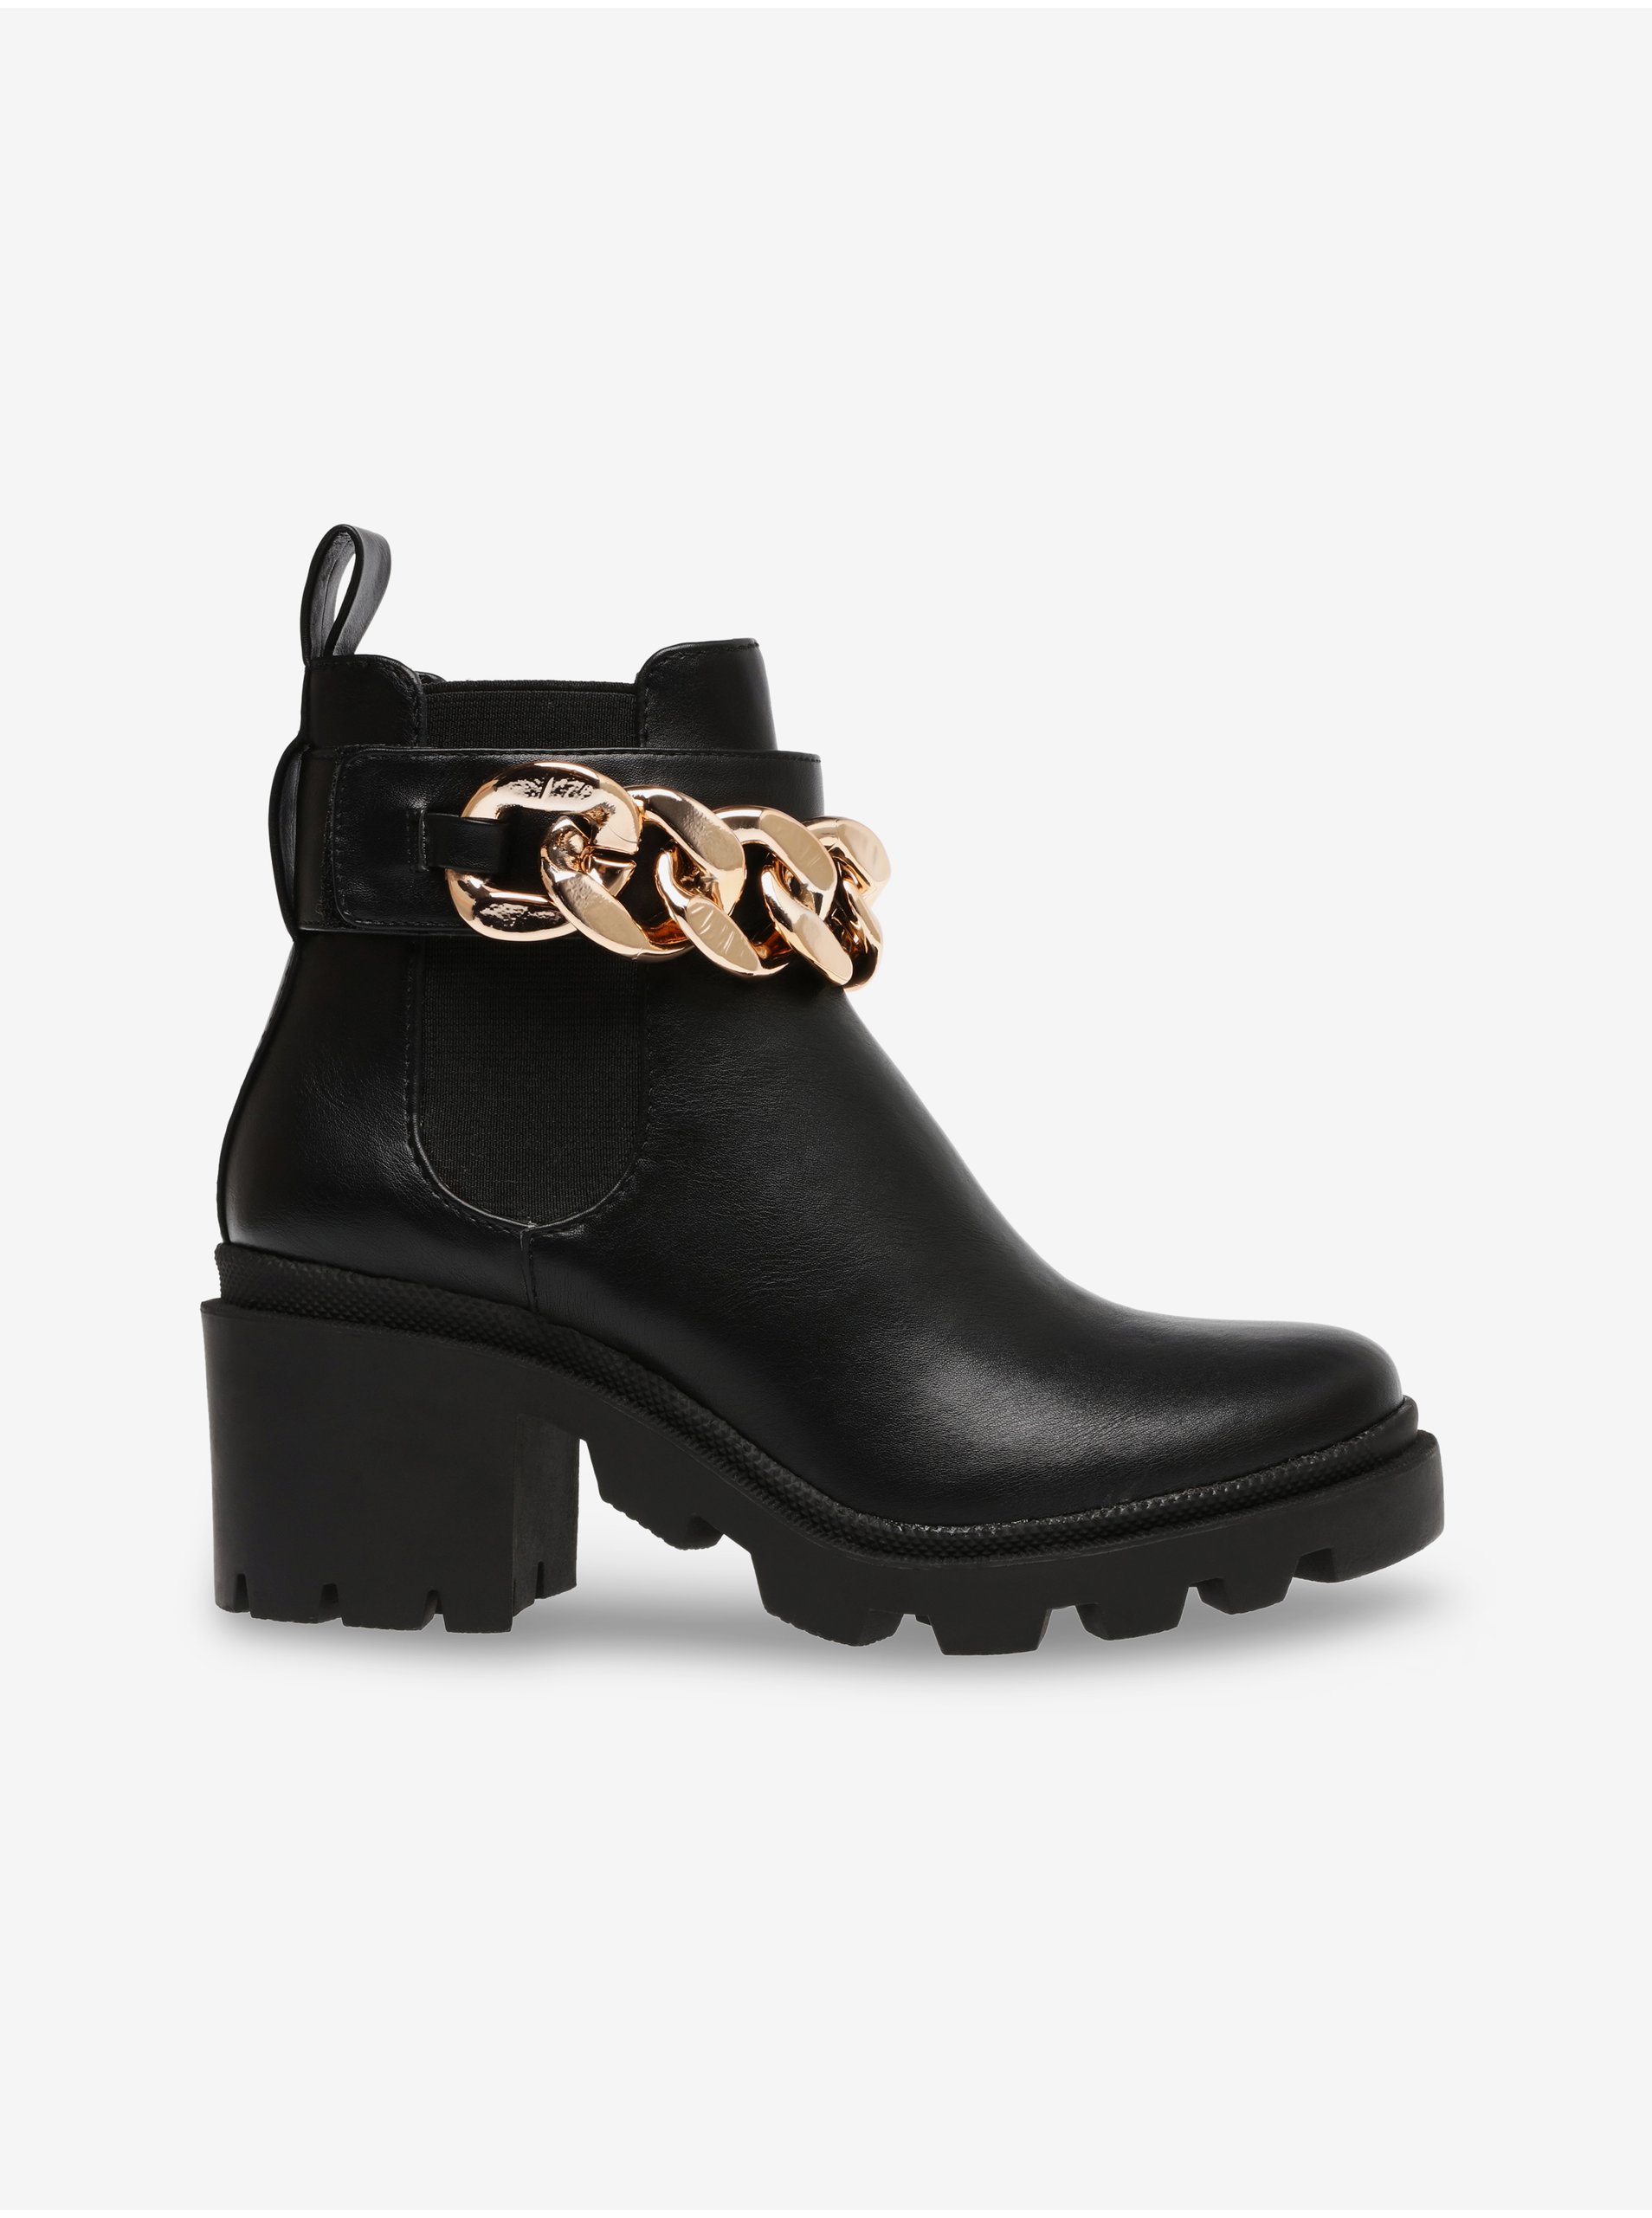 E-shop Čierne dámske členkové topánky na podpätku Steve Madden Amulet